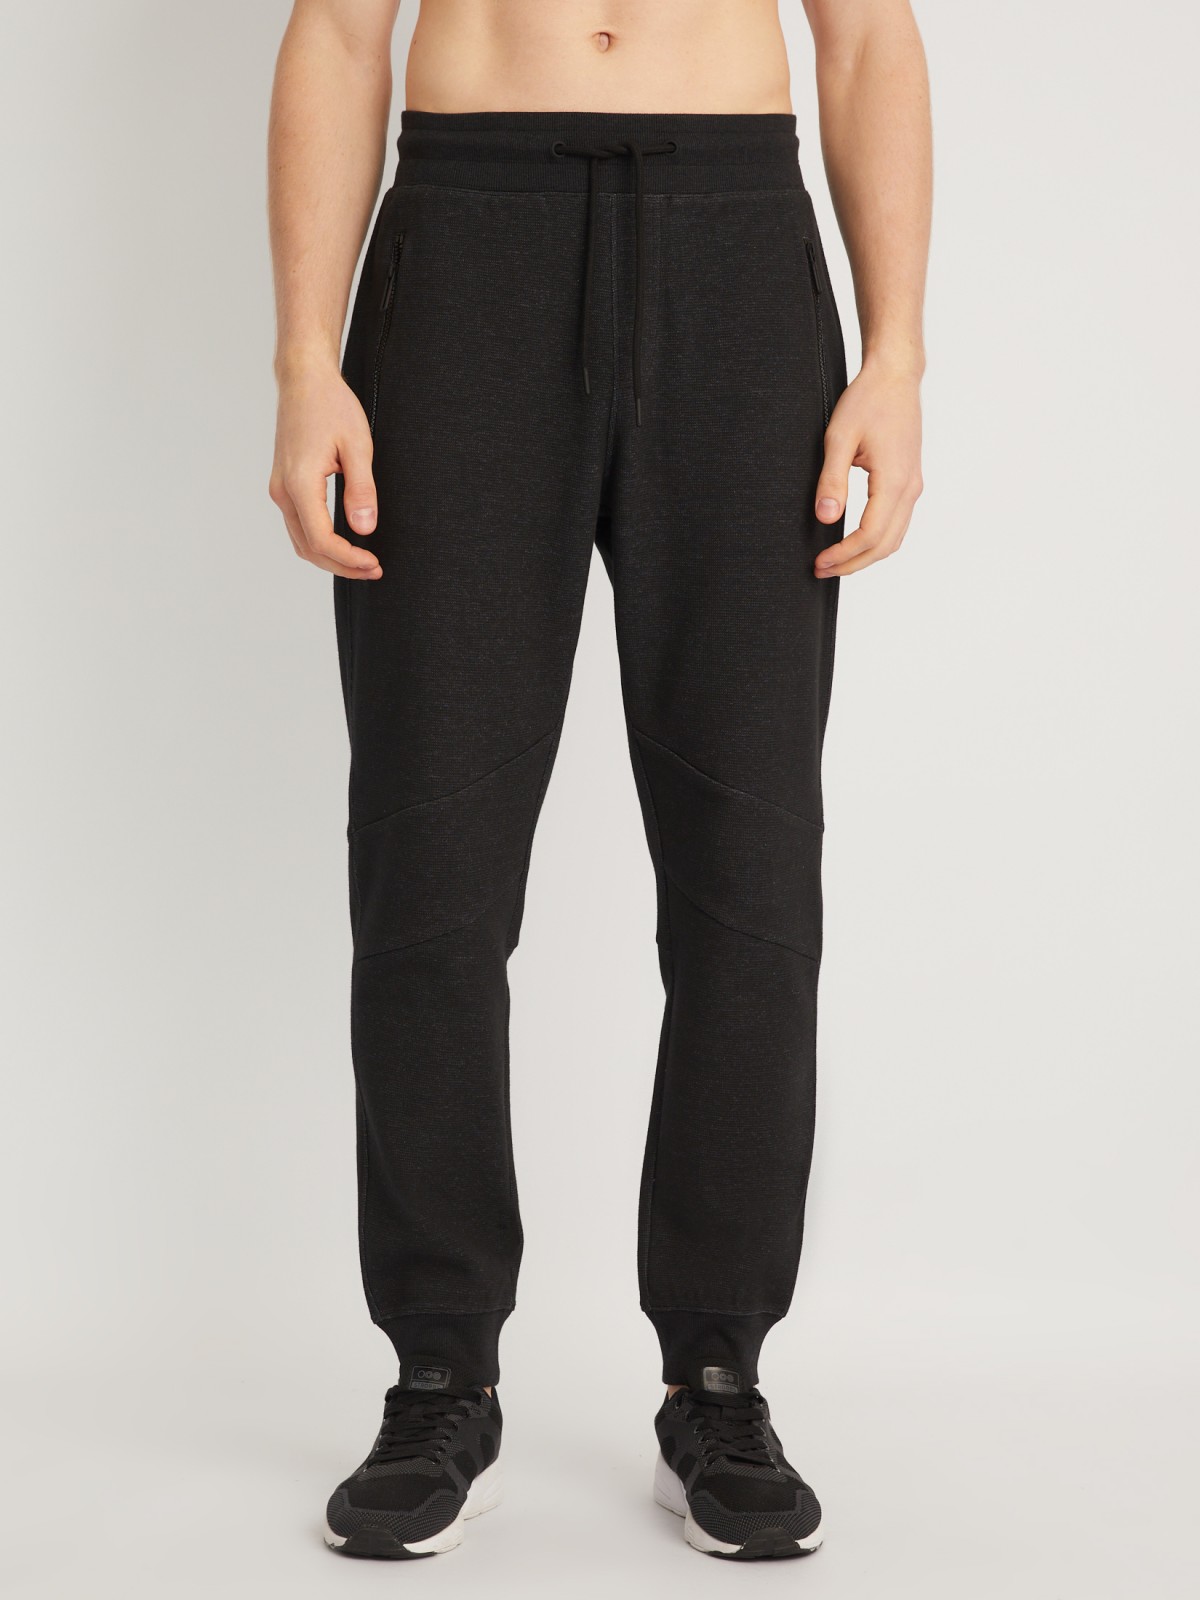 Трикотажные брюки-джоггеры в спортивном стиле zolla 014127679013, цвет черный, размер S - фото 2